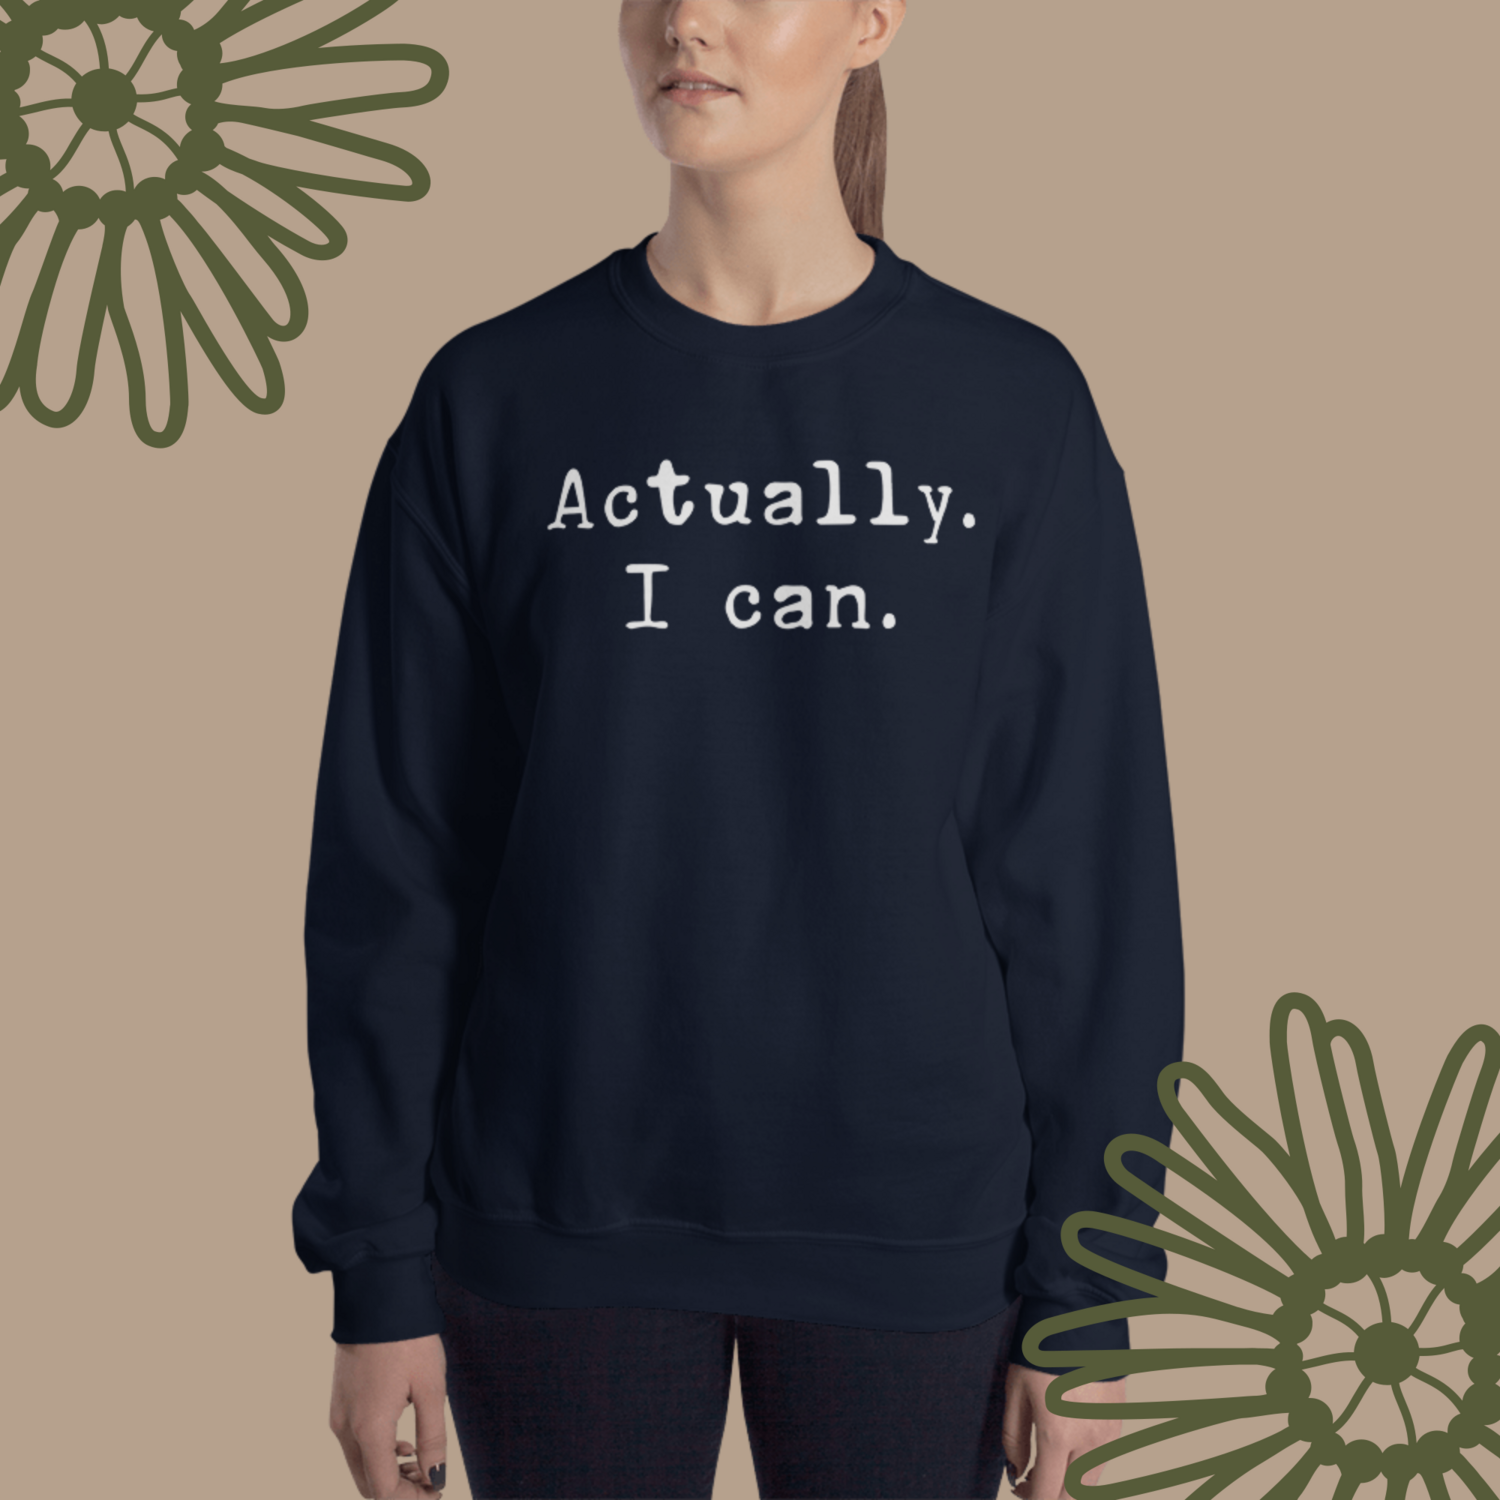 Actually. I can. Sweatshirt